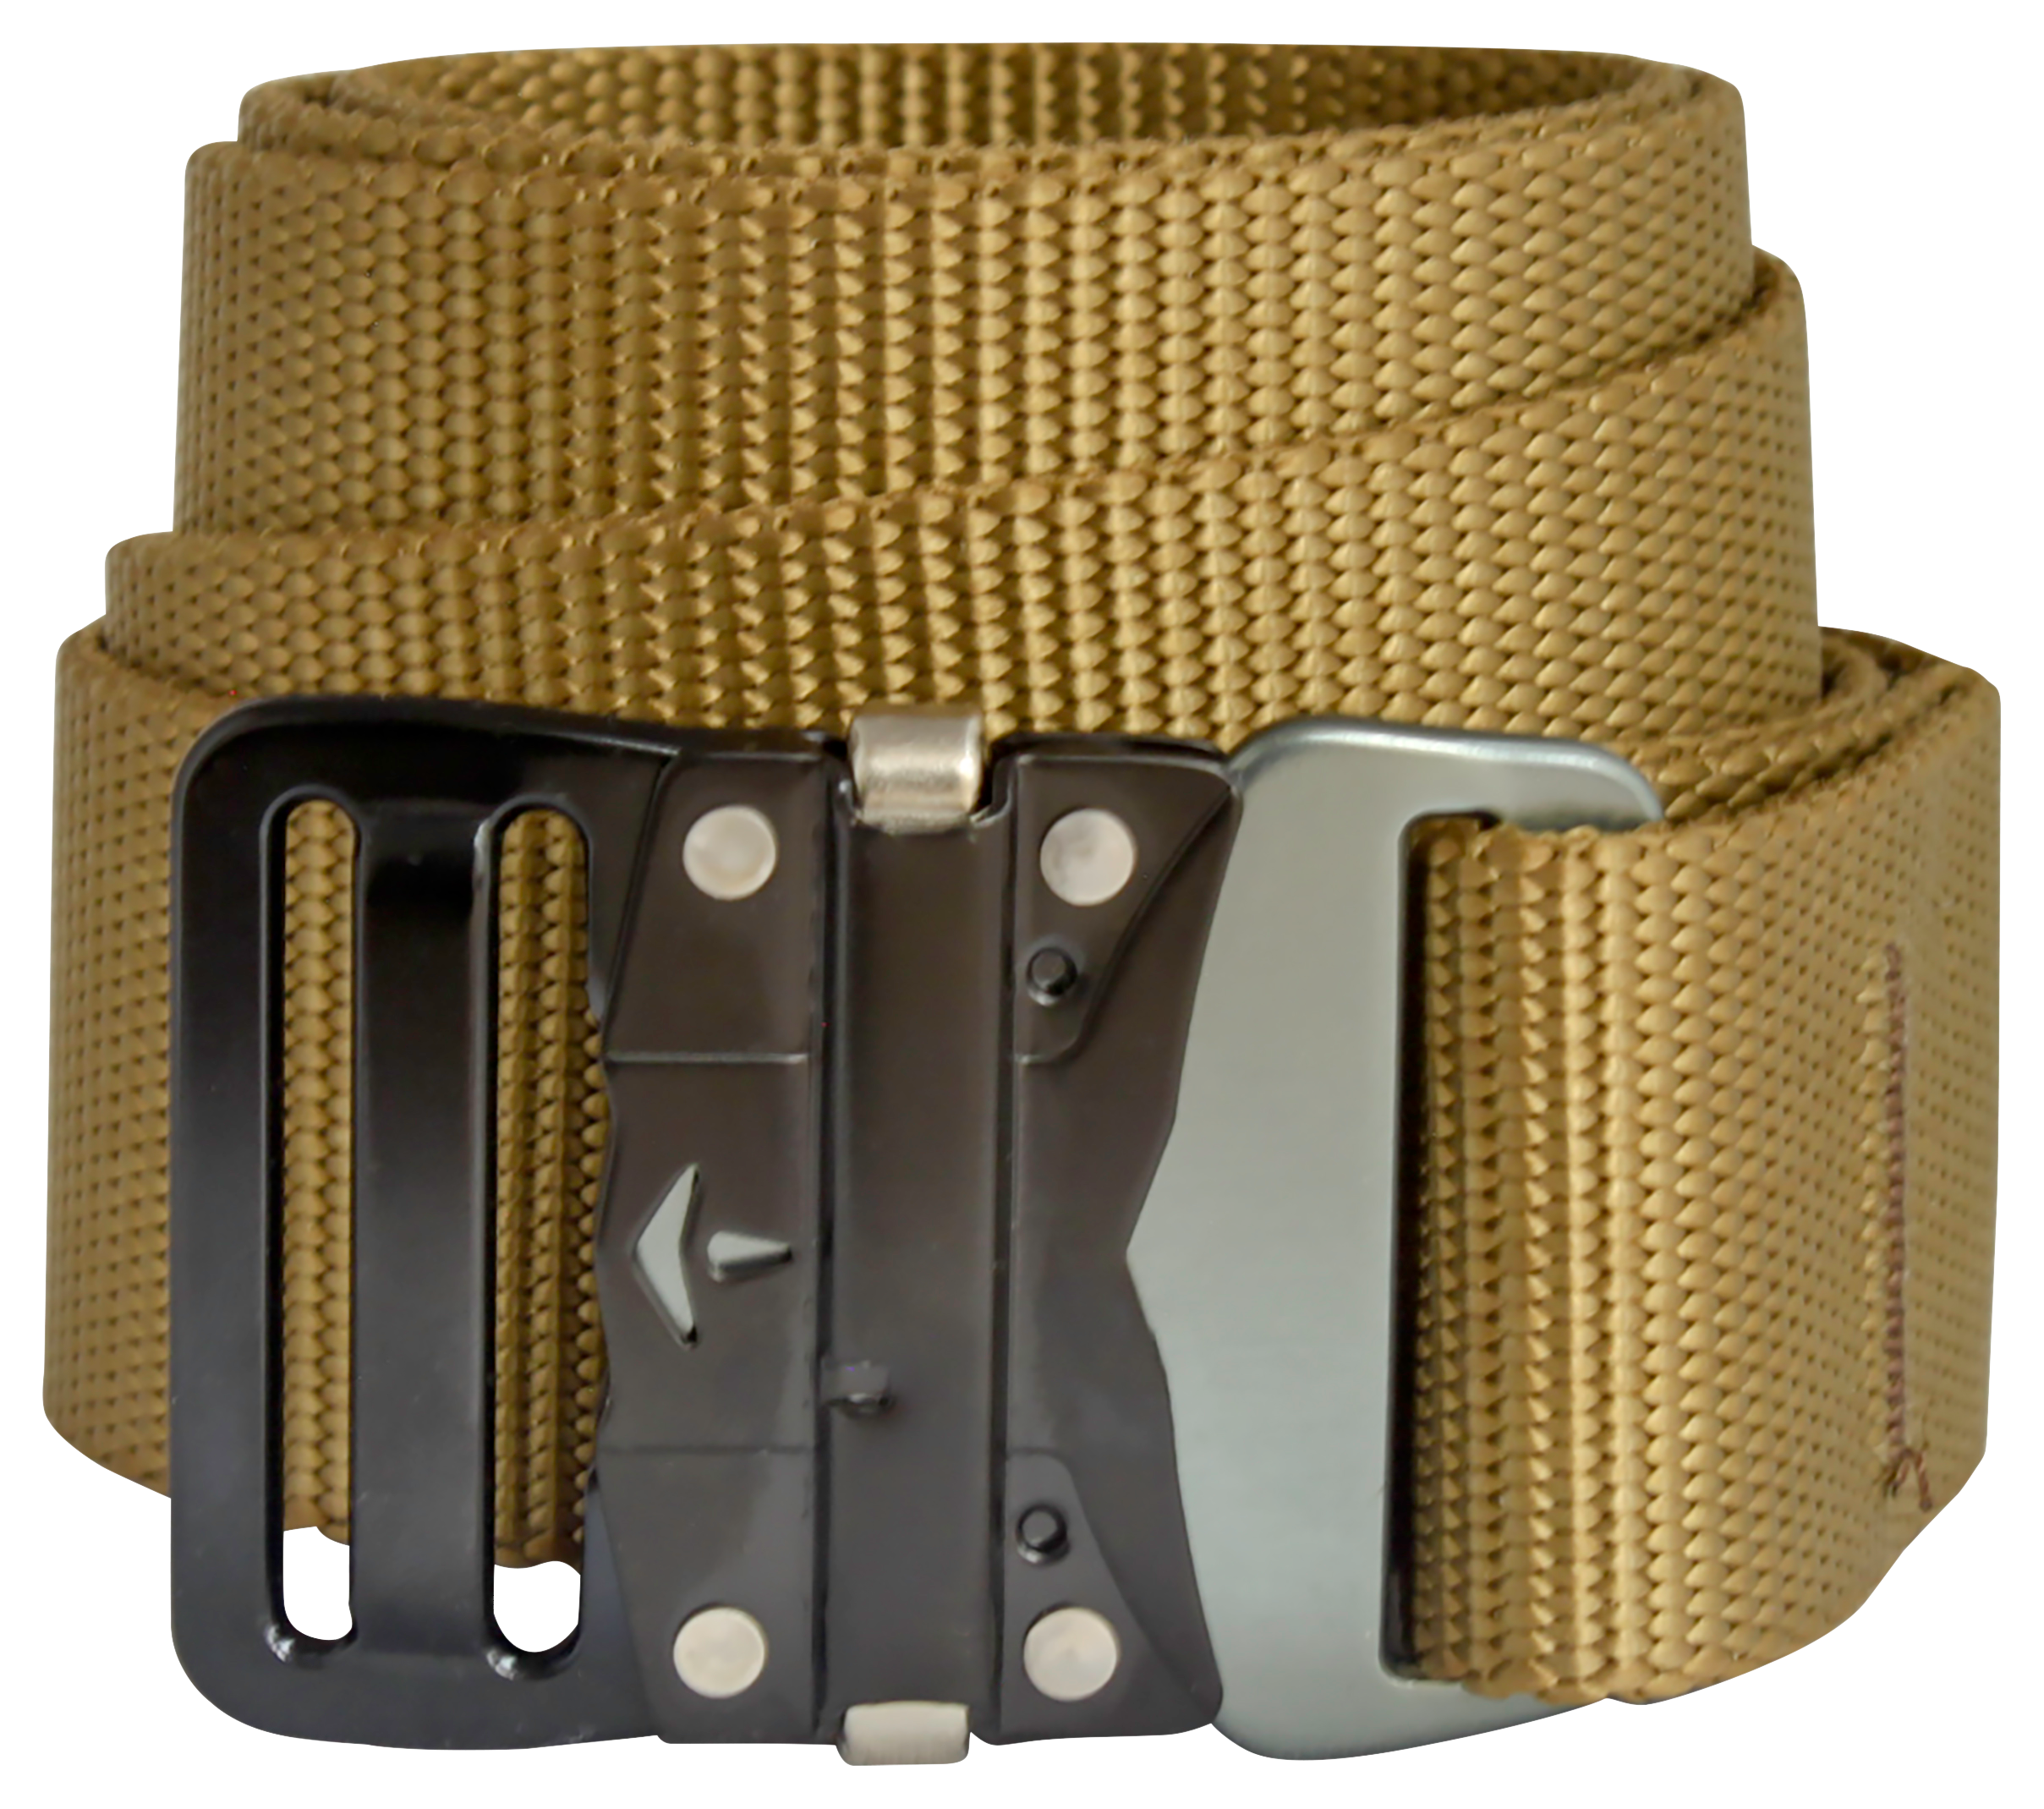 Bison Designs 38mm LoPro Buckle Belt for Men - Coyote Brown - L